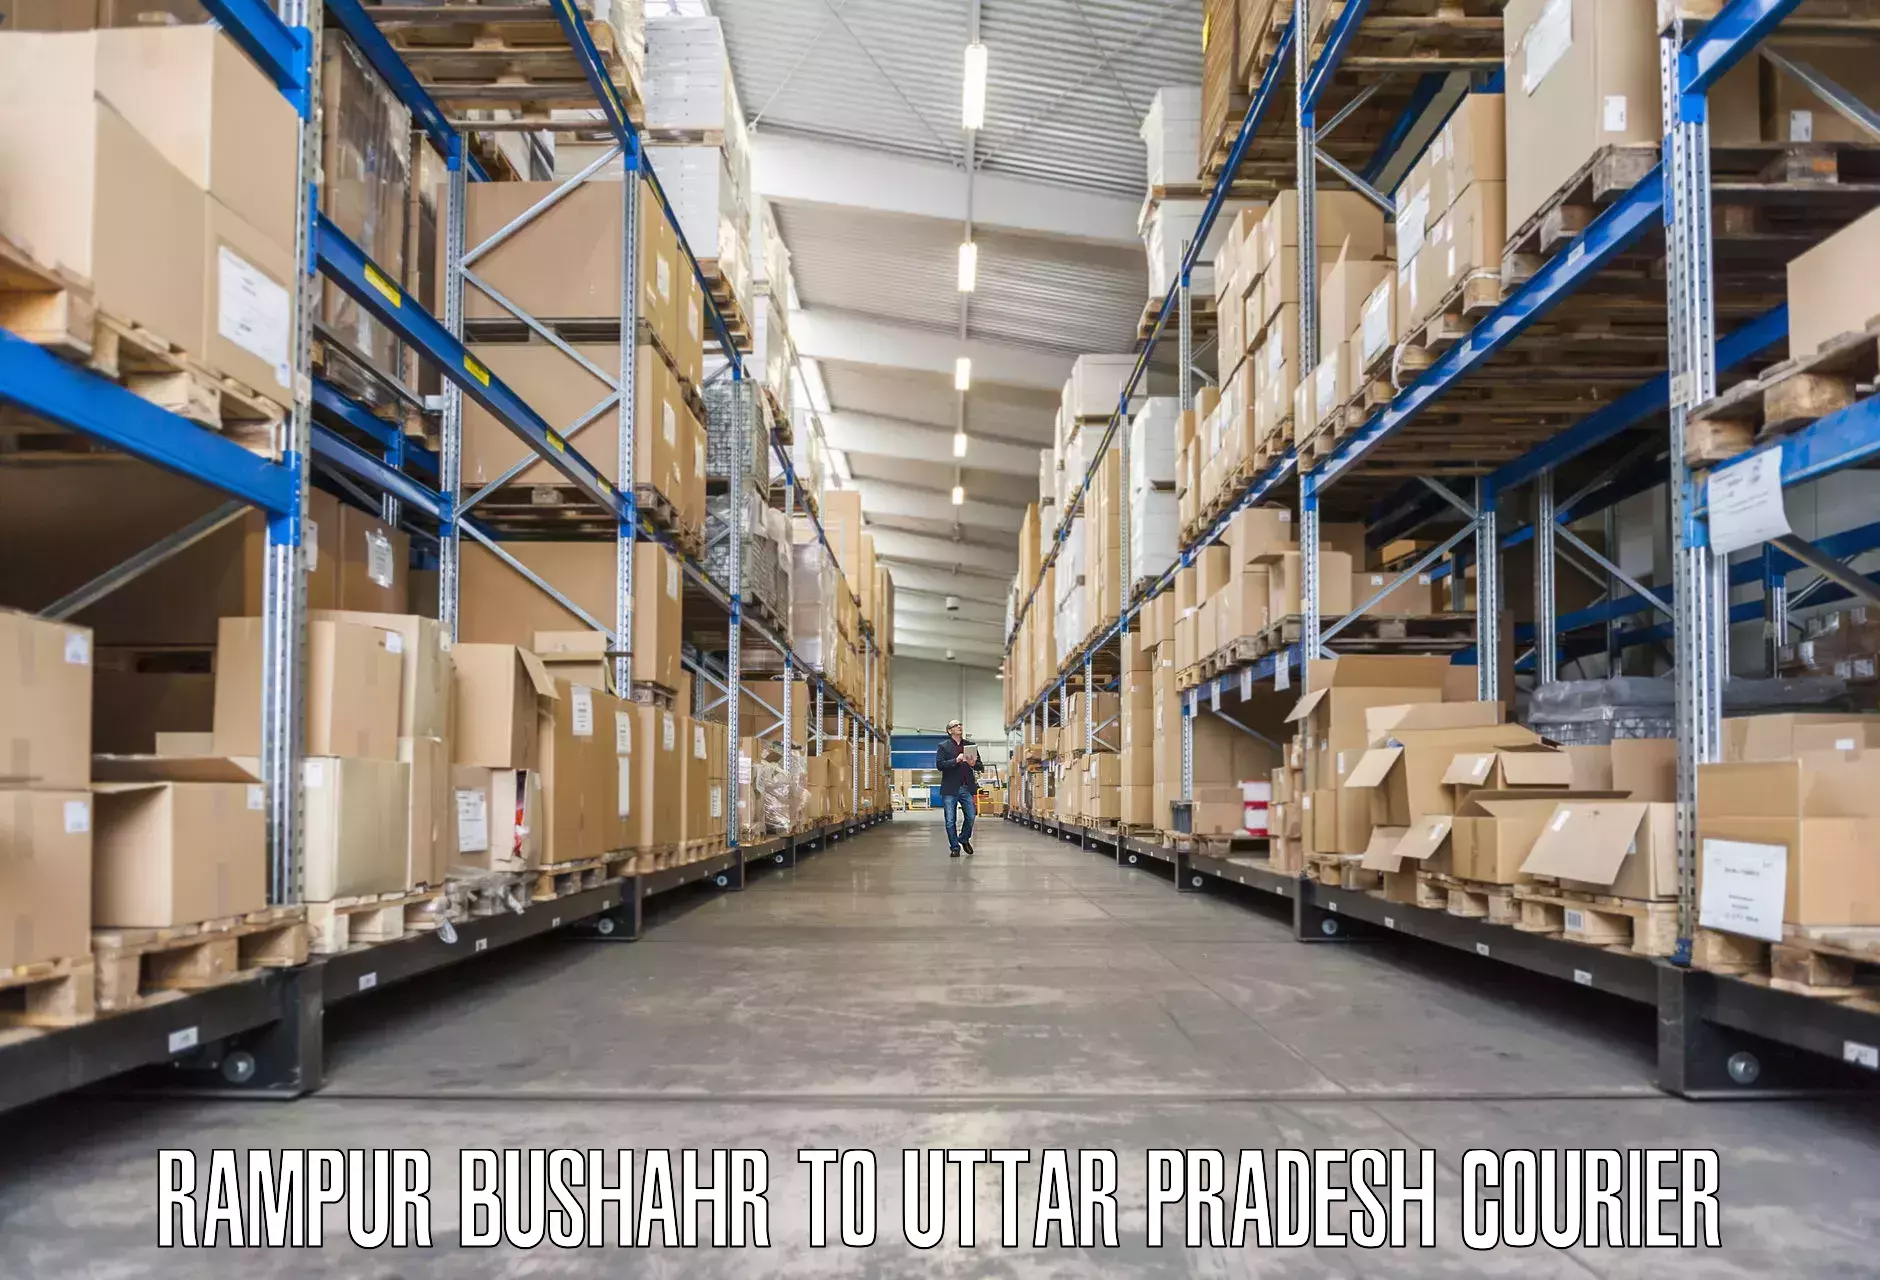 Furniture delivery service Rampur Bushahr to Uttar Pradesh